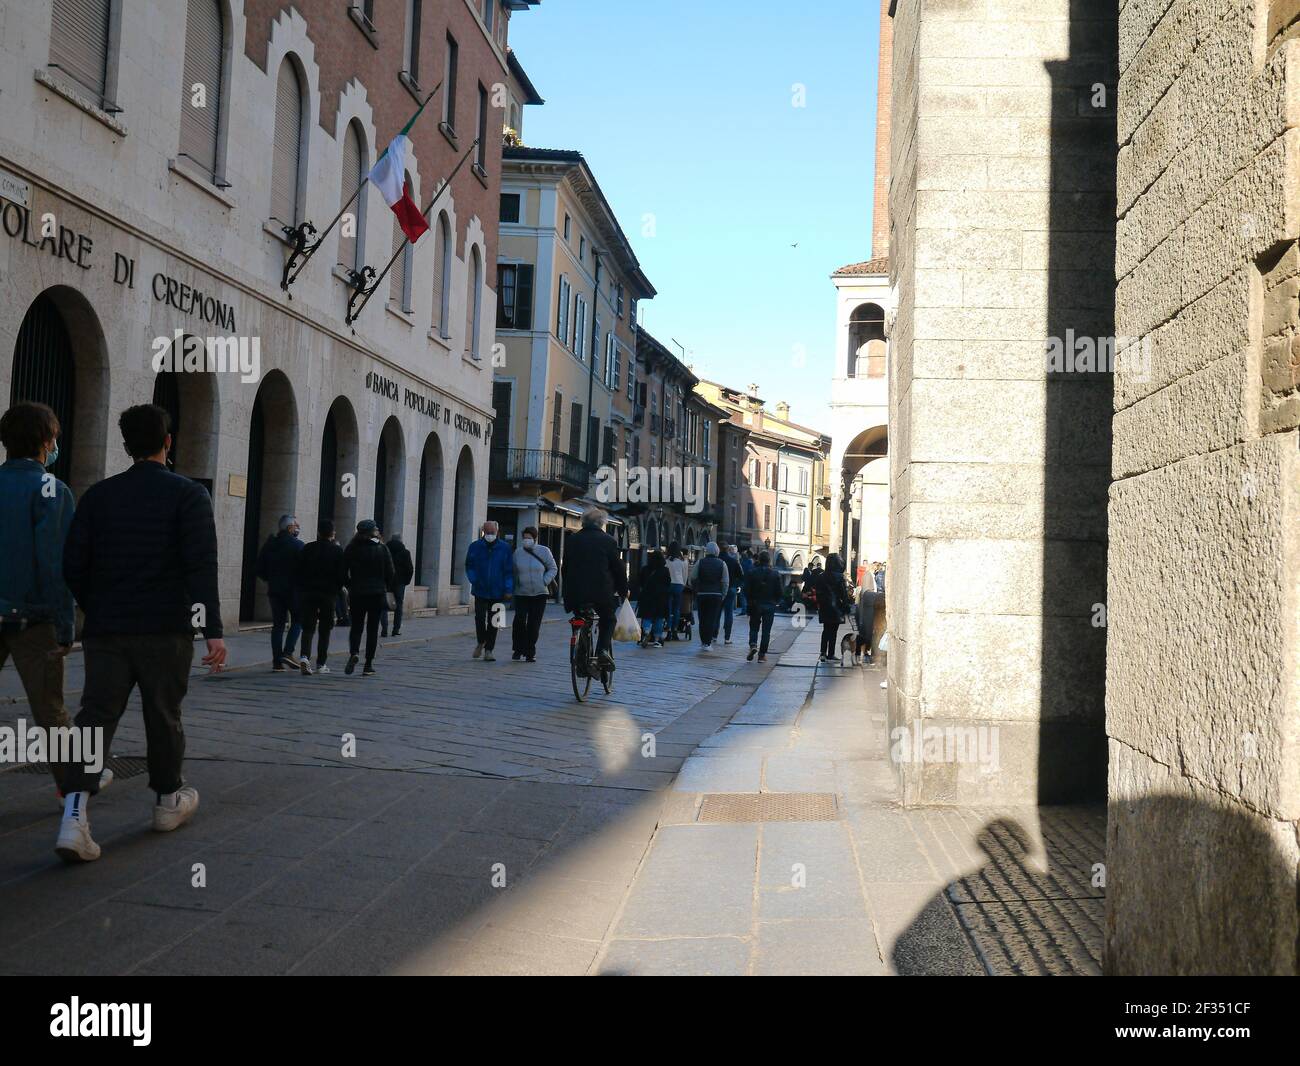 CREMONA, ITALIE - 14 mars 2021: Les jeunes se rassemblent à l'extérieur des bars car il n'est pas permis de boire à l'intérieur ou à l'extérieur comme c'est contre les dernières règles de Covid-19 Banque D'Images